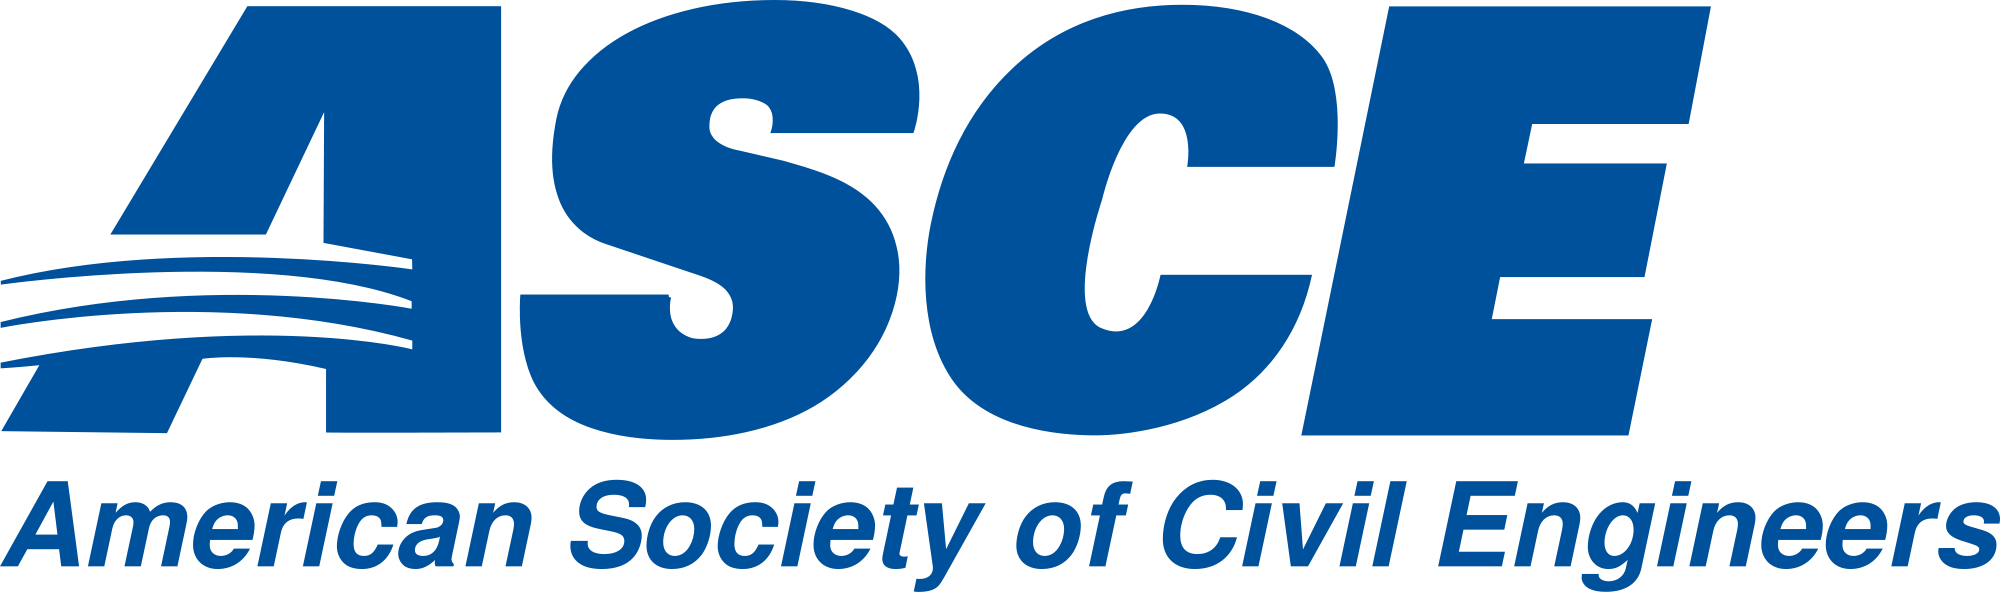 ASCE Logo - File:ASCE.svg - Wikimedia Commons